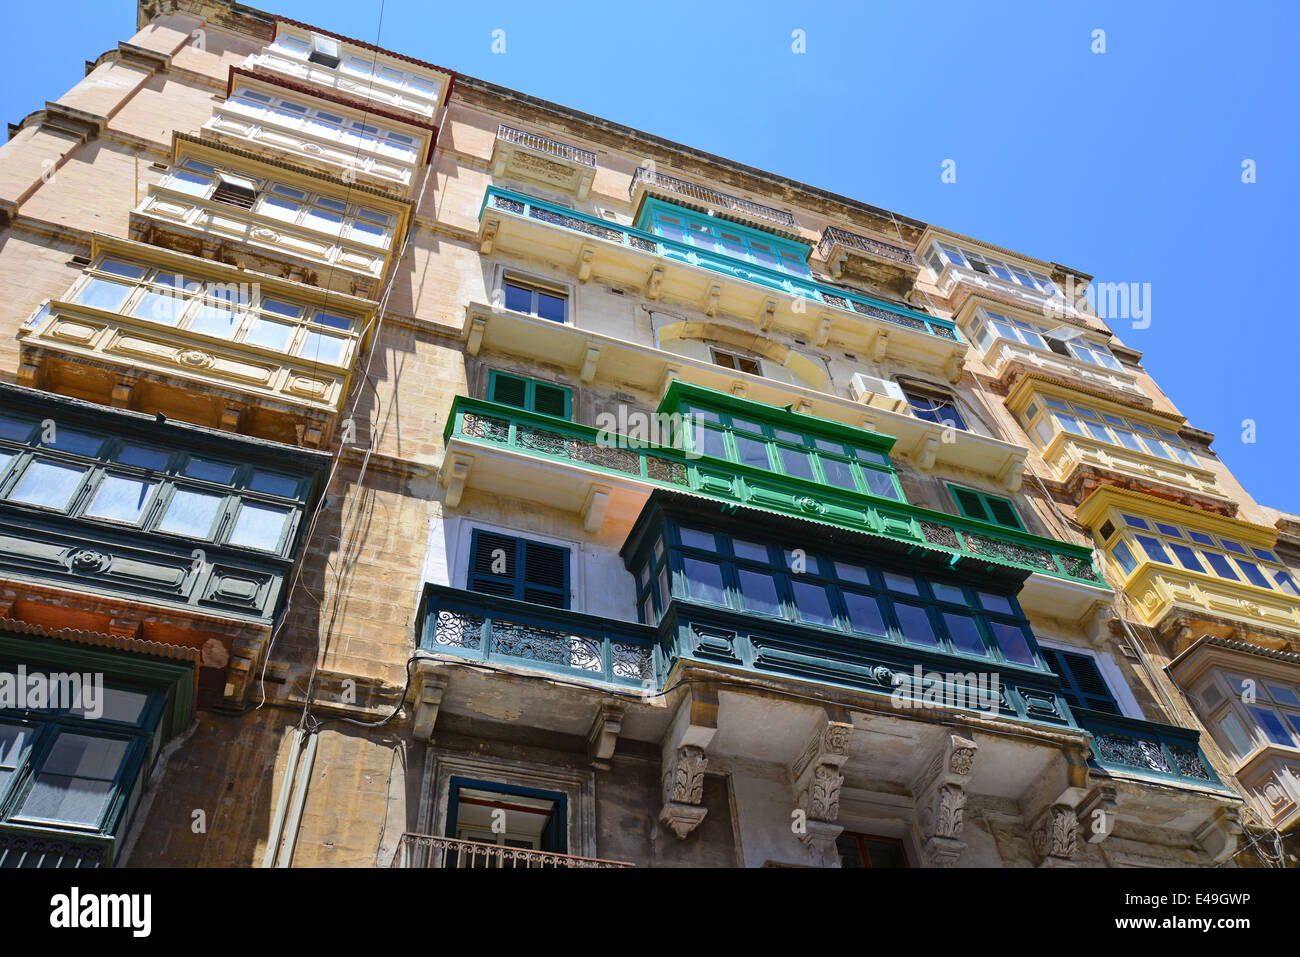 Gallarija balconi, La Valletta (Il-Belt Valletta), Sud del quartiere portuale, Malta Xlokk Regione, Repubblica di Malta Foto Stock